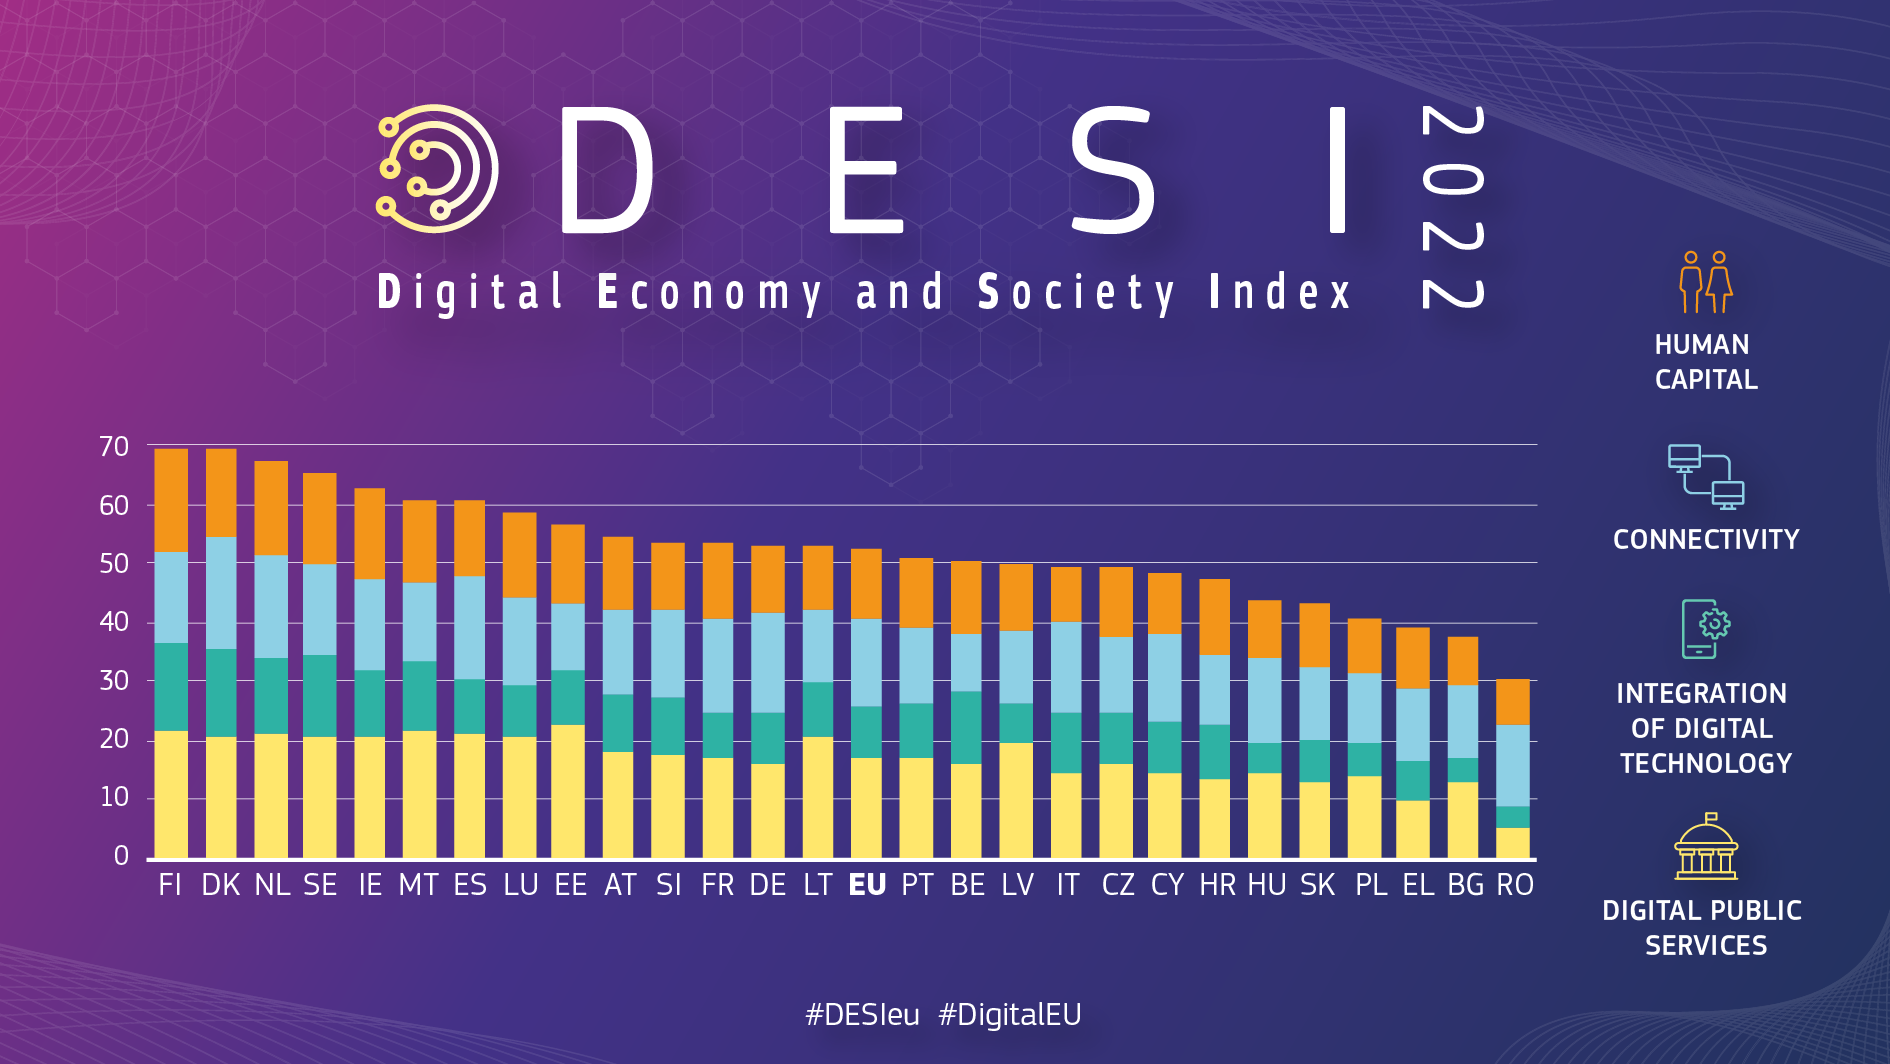 Gráfico que indica o desempenho do país no IDES: Dinamarca, Finlândia e Países Baixos lideram o desempenho digital